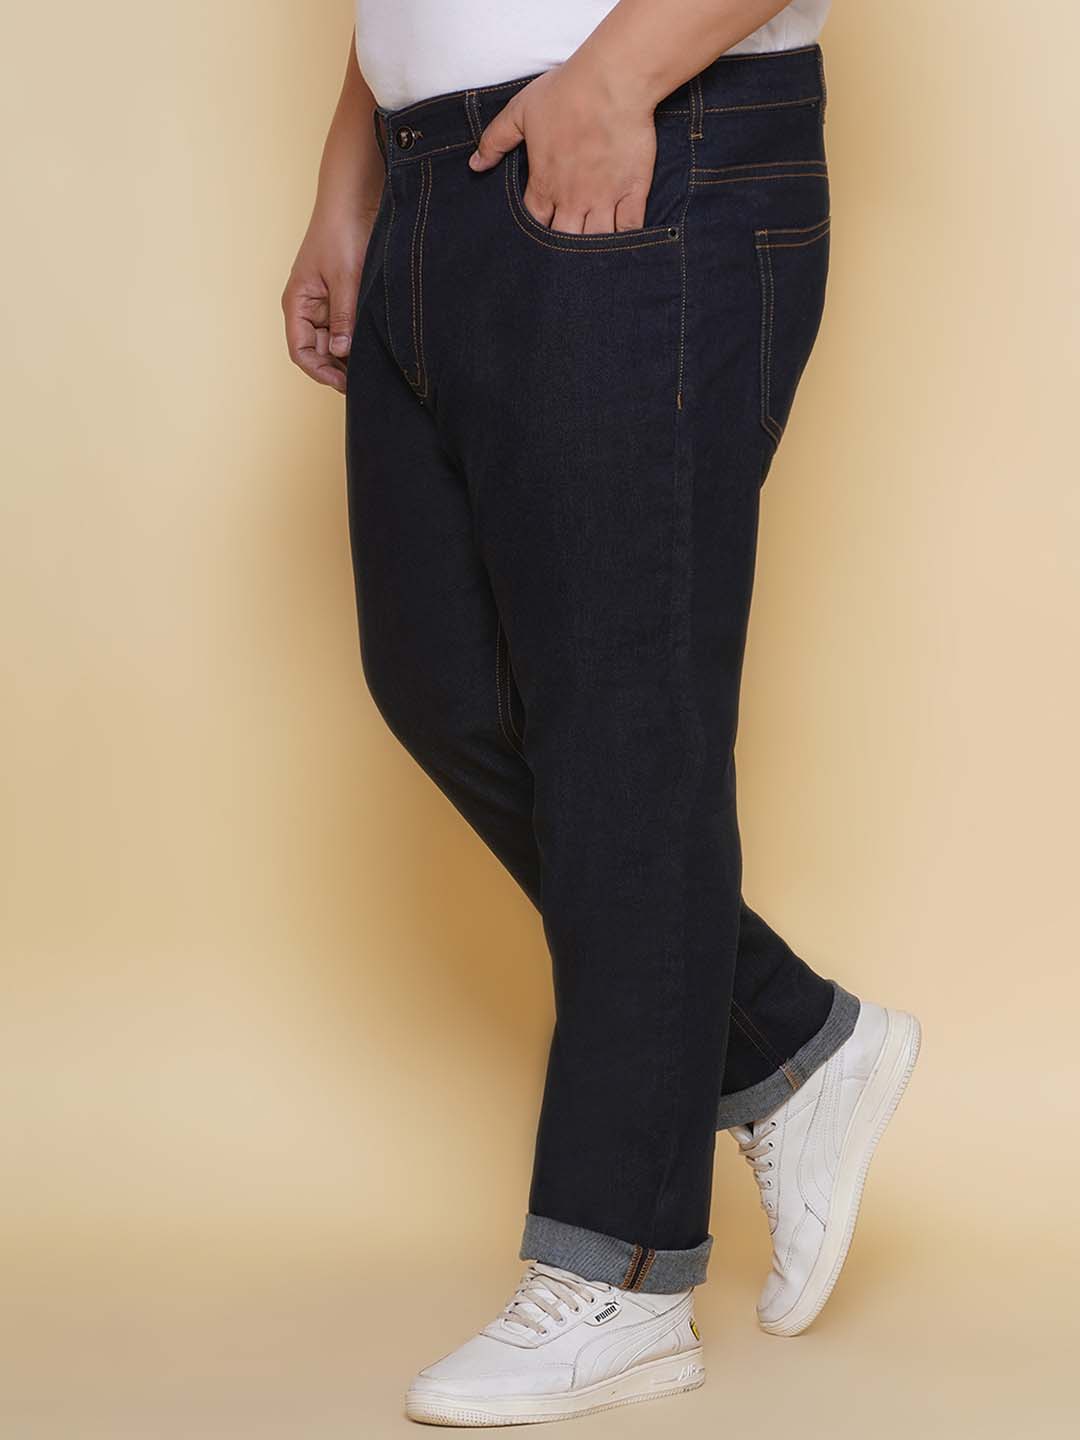 bottomwear/jeans/PJPJ60101/pjpj60101-4.jpg